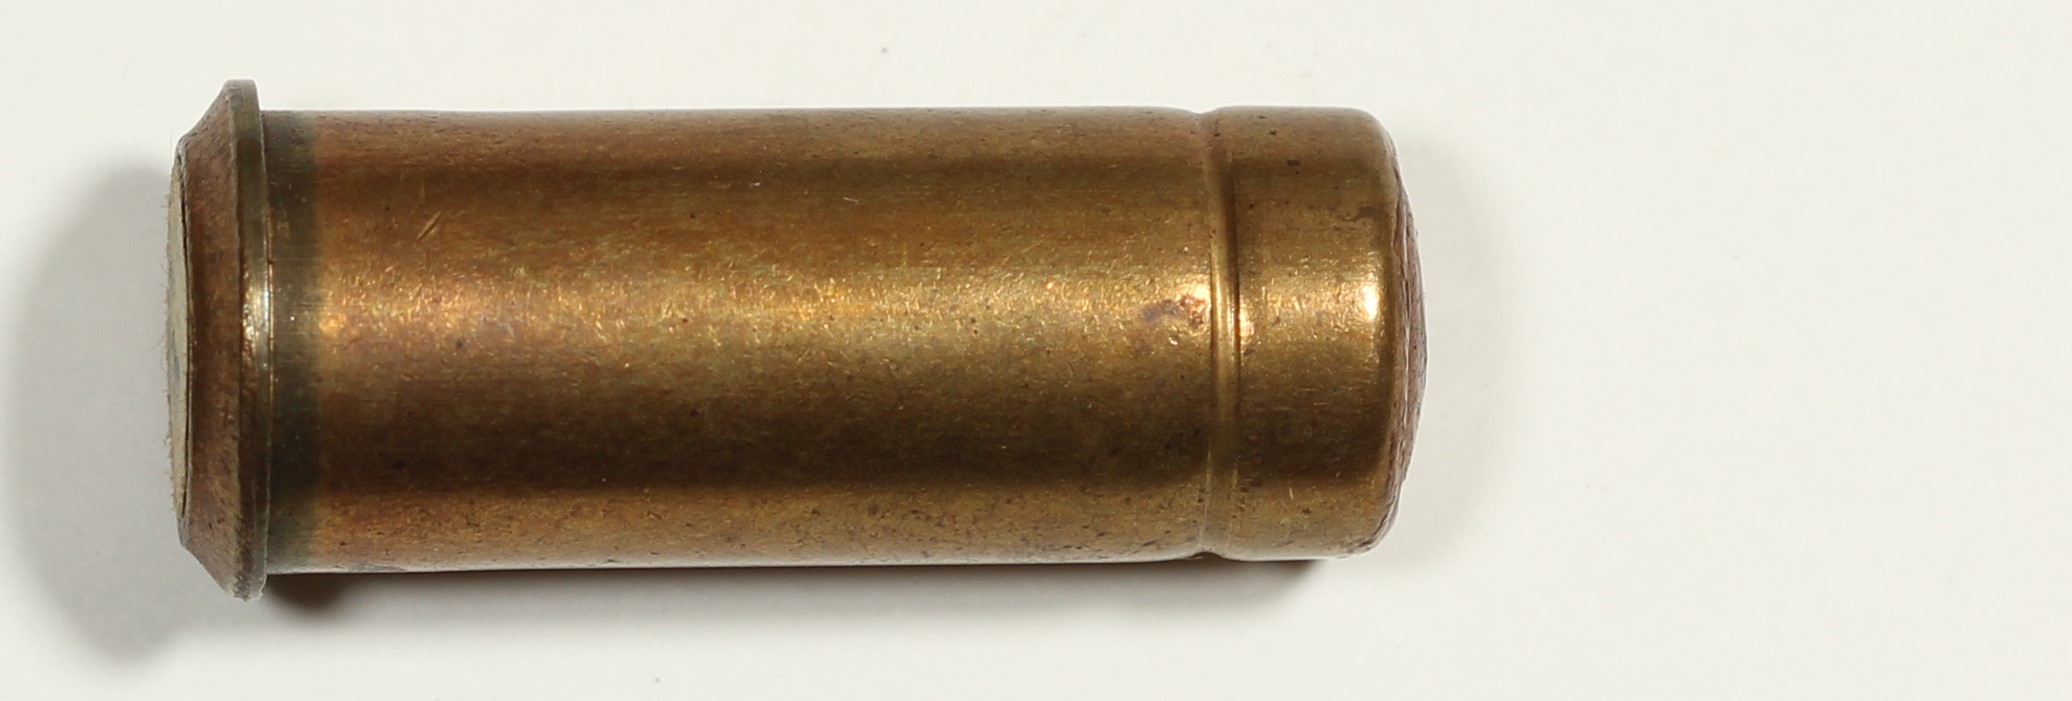 ./ammo/fangstredning/patroner/Patron-12mm-drivpatron-18gram-1.JPG